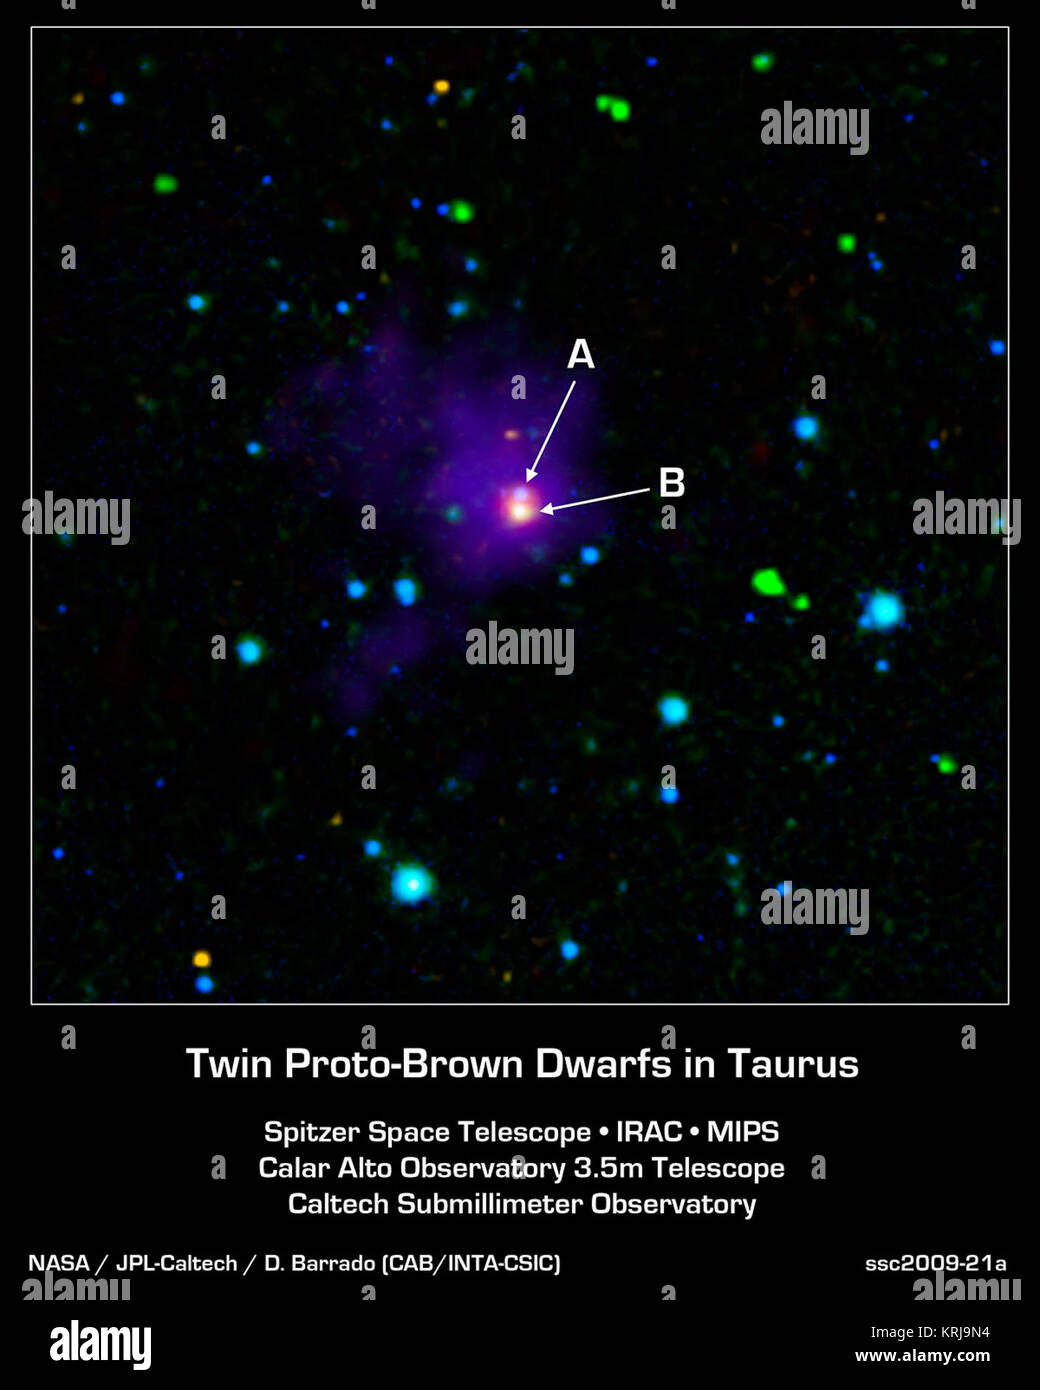 Das Bild zeigt zwei junge Braune Zwerge, Objekte, die irgendwo zwischen Planeten und Sternen in Bezug auf ihre Temperatur und Masse fallen. Braune Zwerge sind kühler und weniger massiv als Sterne, nie Zünden des nuklearen Feuer, die ihre größeren Cousins, doch sie mehr massiv sind (und in der Regel wärmer) als Planeten. Bei der braunen Zwerge geboren, sie Wärme in der Nähe Gas und Staub, Mit leistungsstarken Teleskopen wie die NASA-Weltraumteleskop Spitzer, um ihre Anwesenheit zu erkennen. Hier sehen wir eine lange gesucht - nach Ansicht dieser sehr jungen Objekte, mit A und B, die scheinen, so eng-Raum Stockfoto